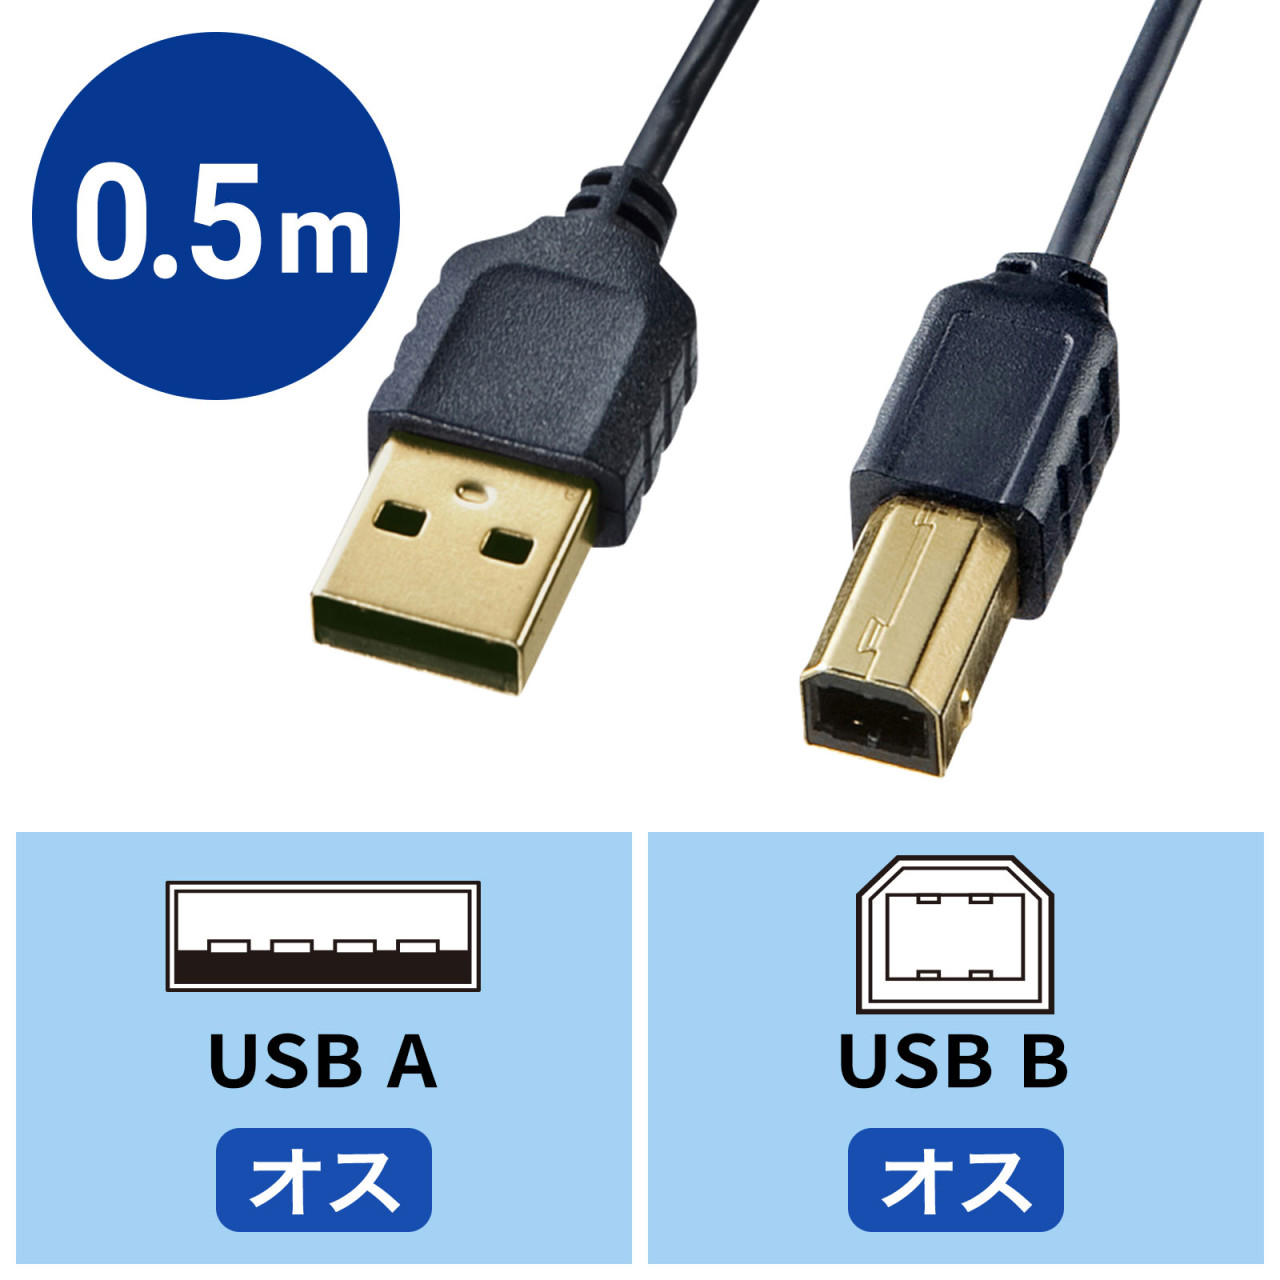 極細USBケーブル USB2.0 A-Bタイプ ブラック 1.5m[KU20-SL15BKK]